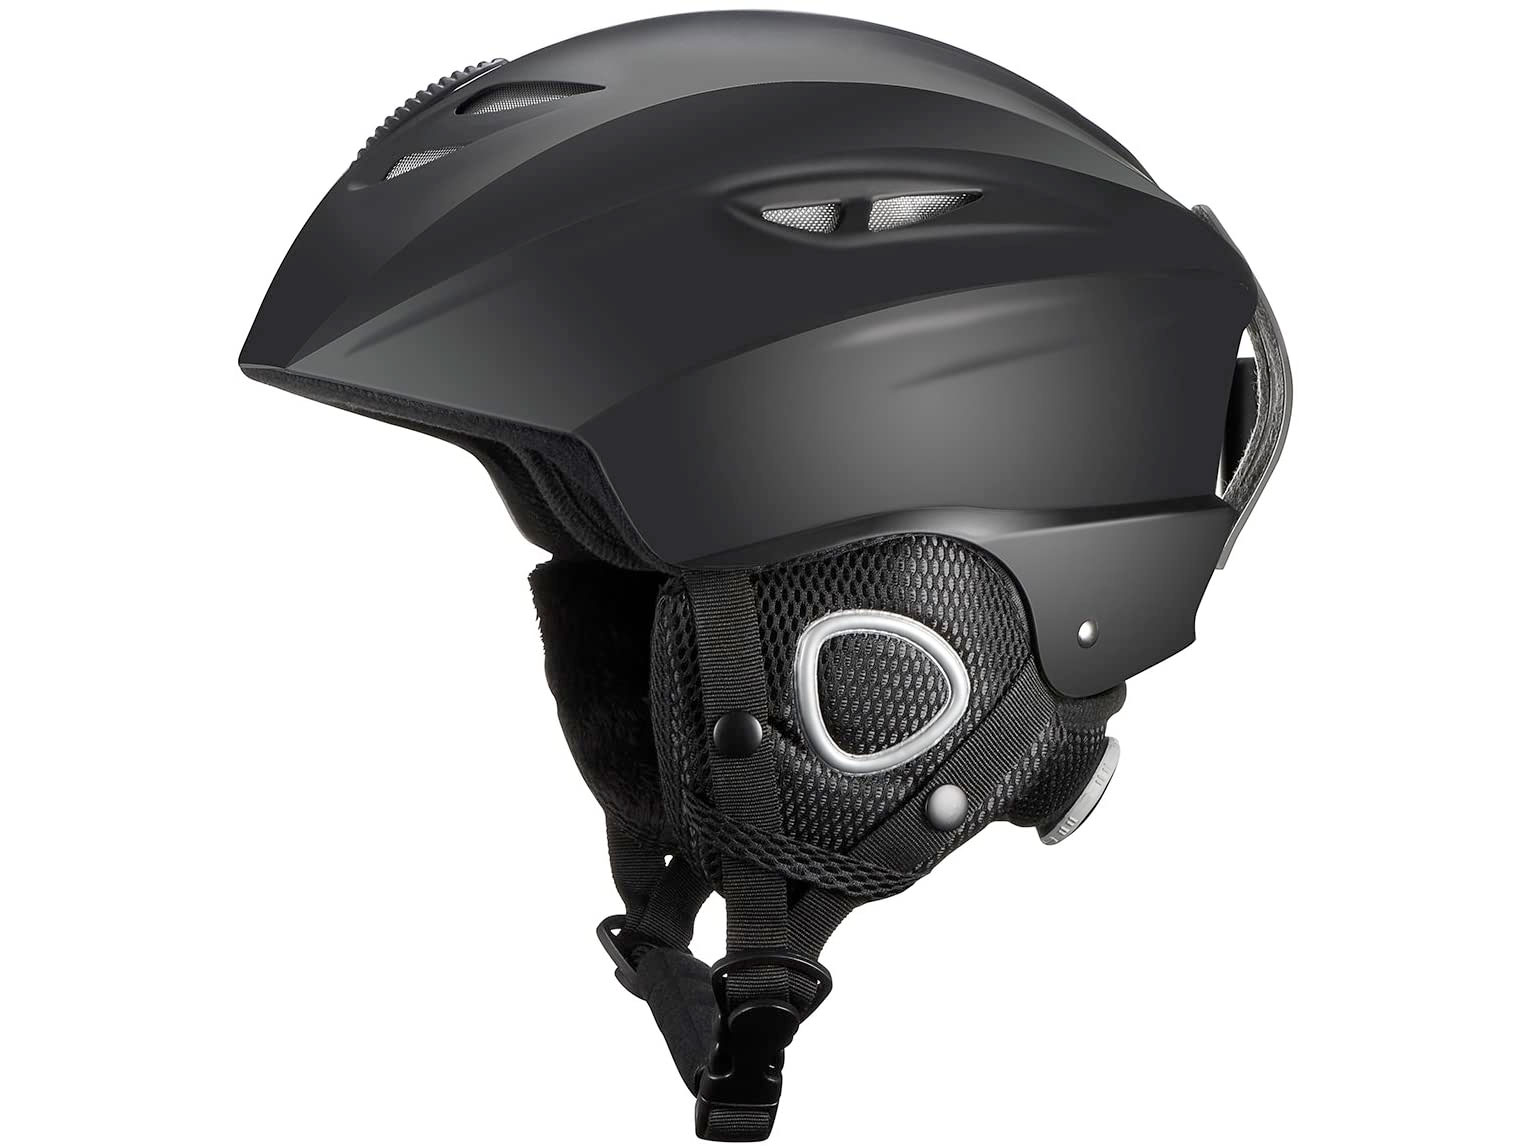 Amazon：TOPELEK Ski Helmet只賣$19.99